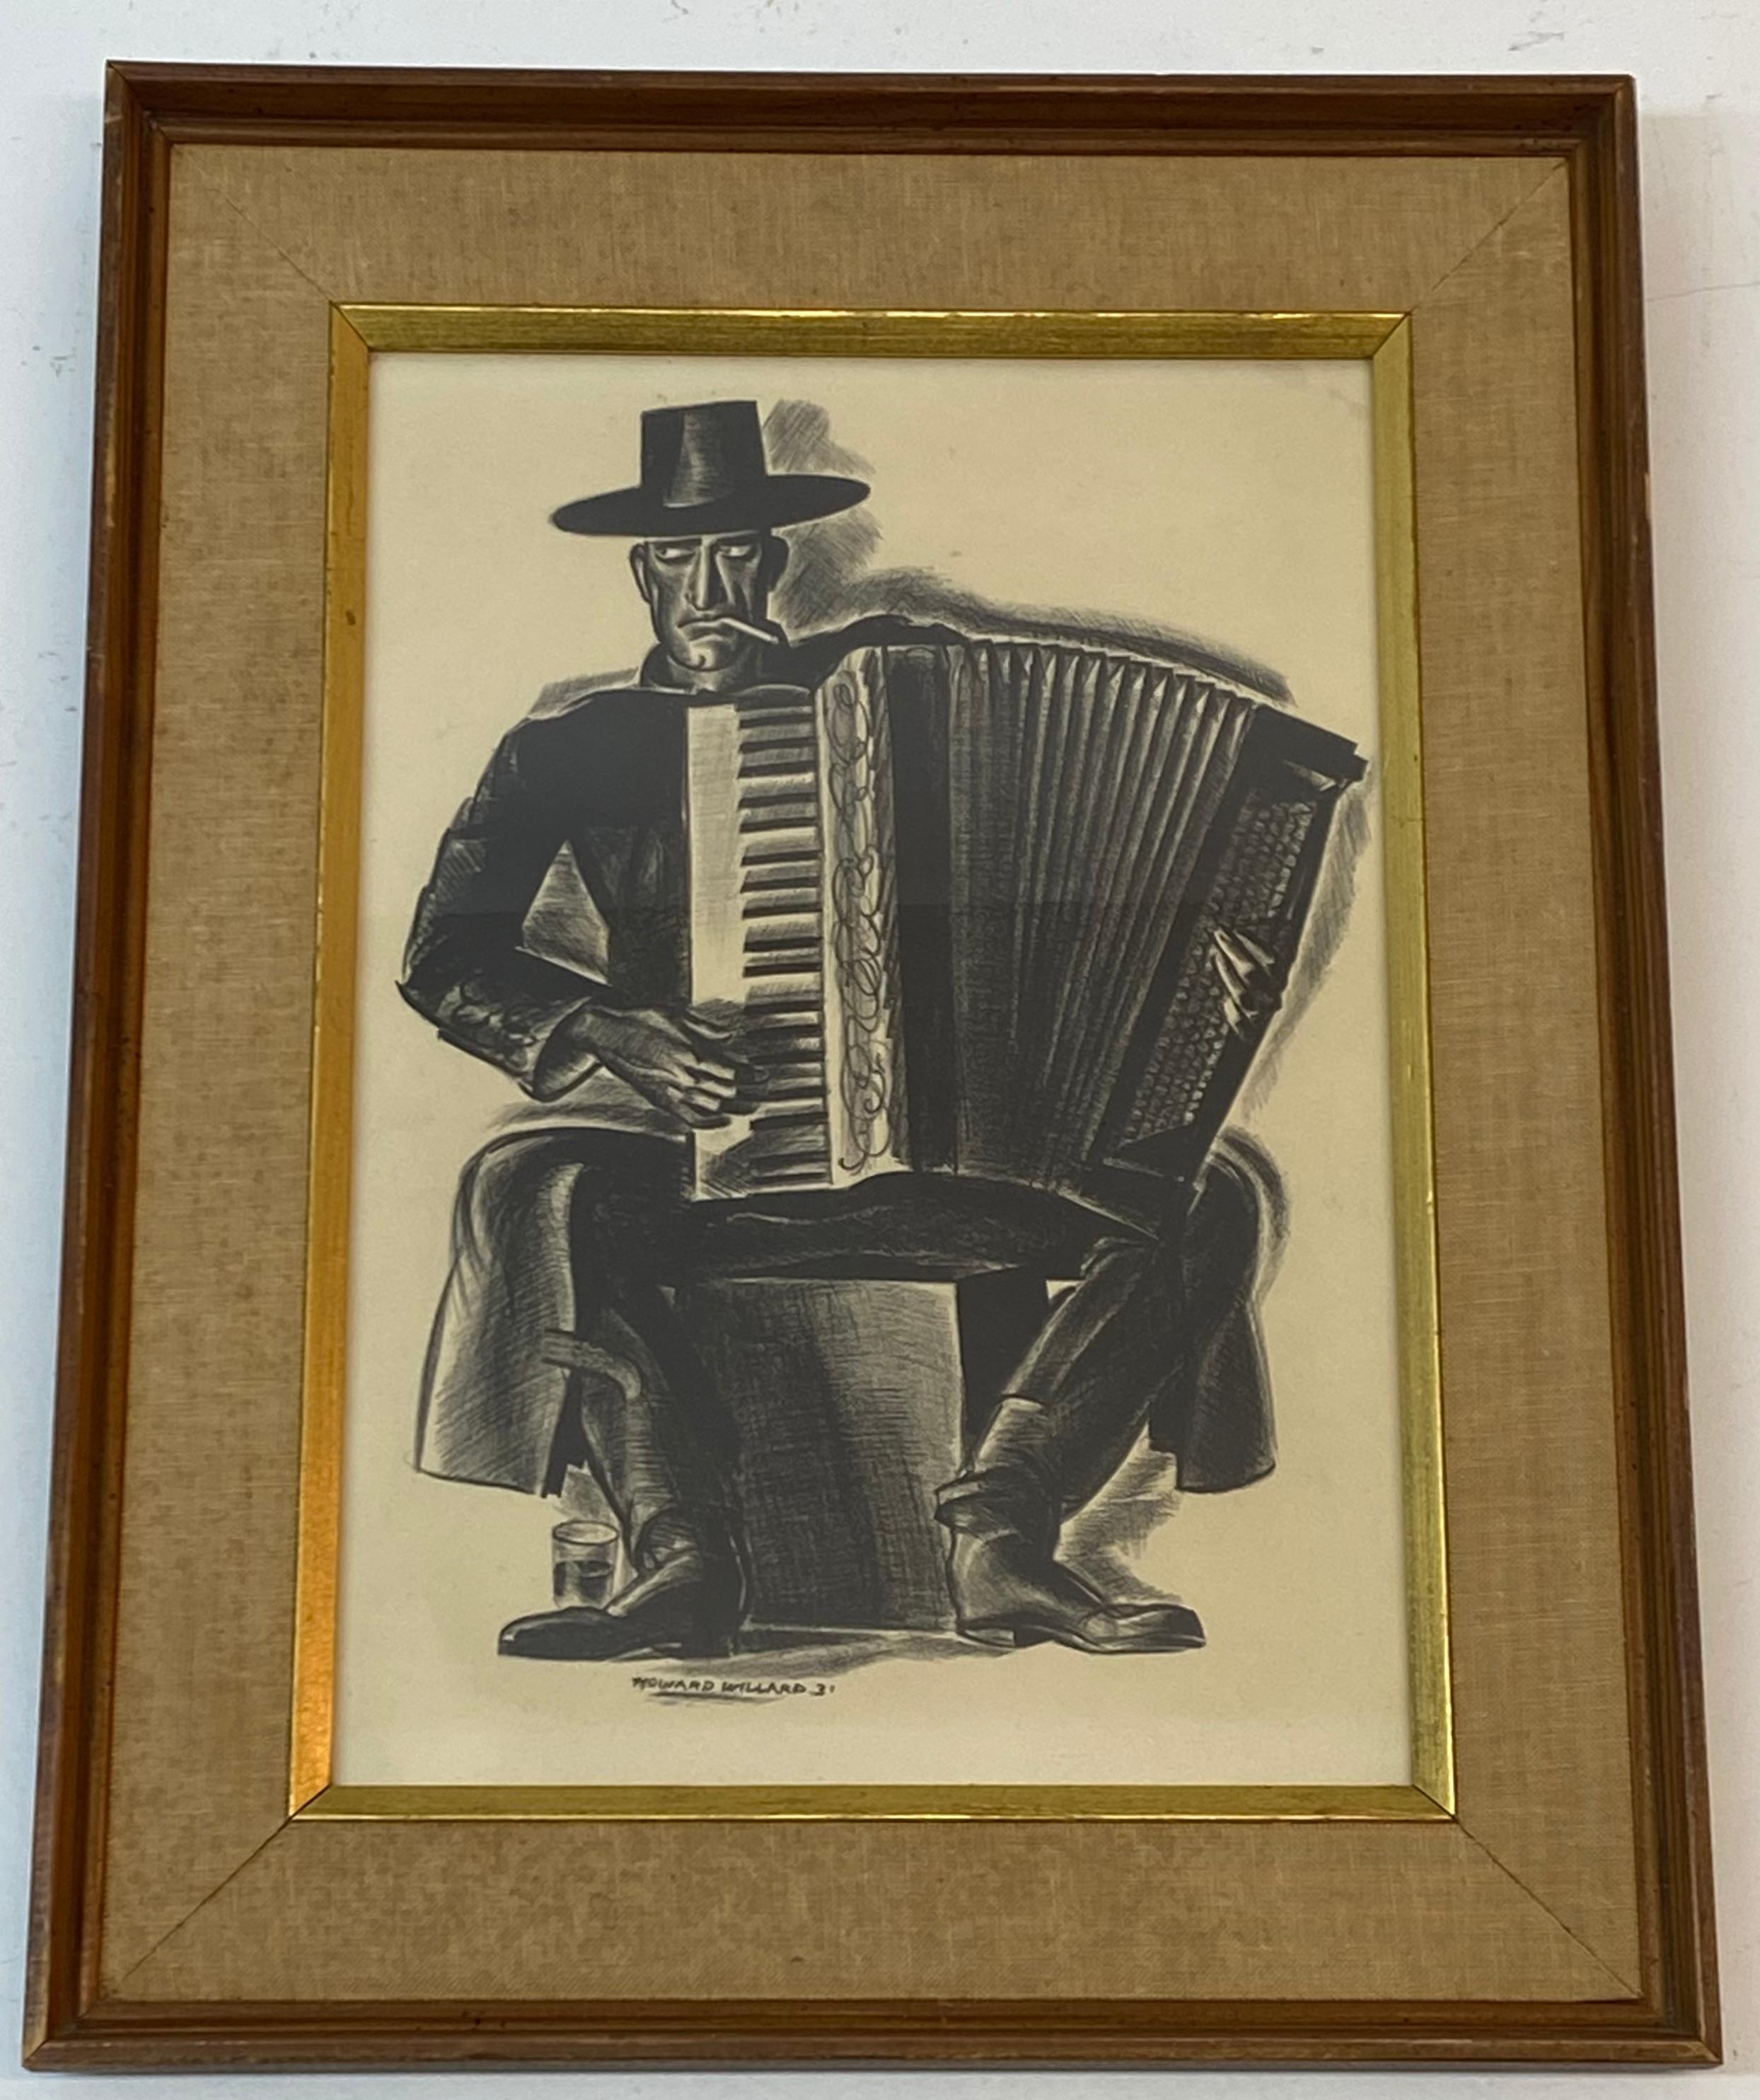 Howard Willard "L'accordéoniste" Lithographie originale c.1931 

Dimensions 9,25" de large x 13,5" de haut

Le cadre mesure 14,25 pouces de large sur 18,25 pouces de haut

Bon état 

Howard W. Willard est né à Danville, IL, le 8 septembre 1894.